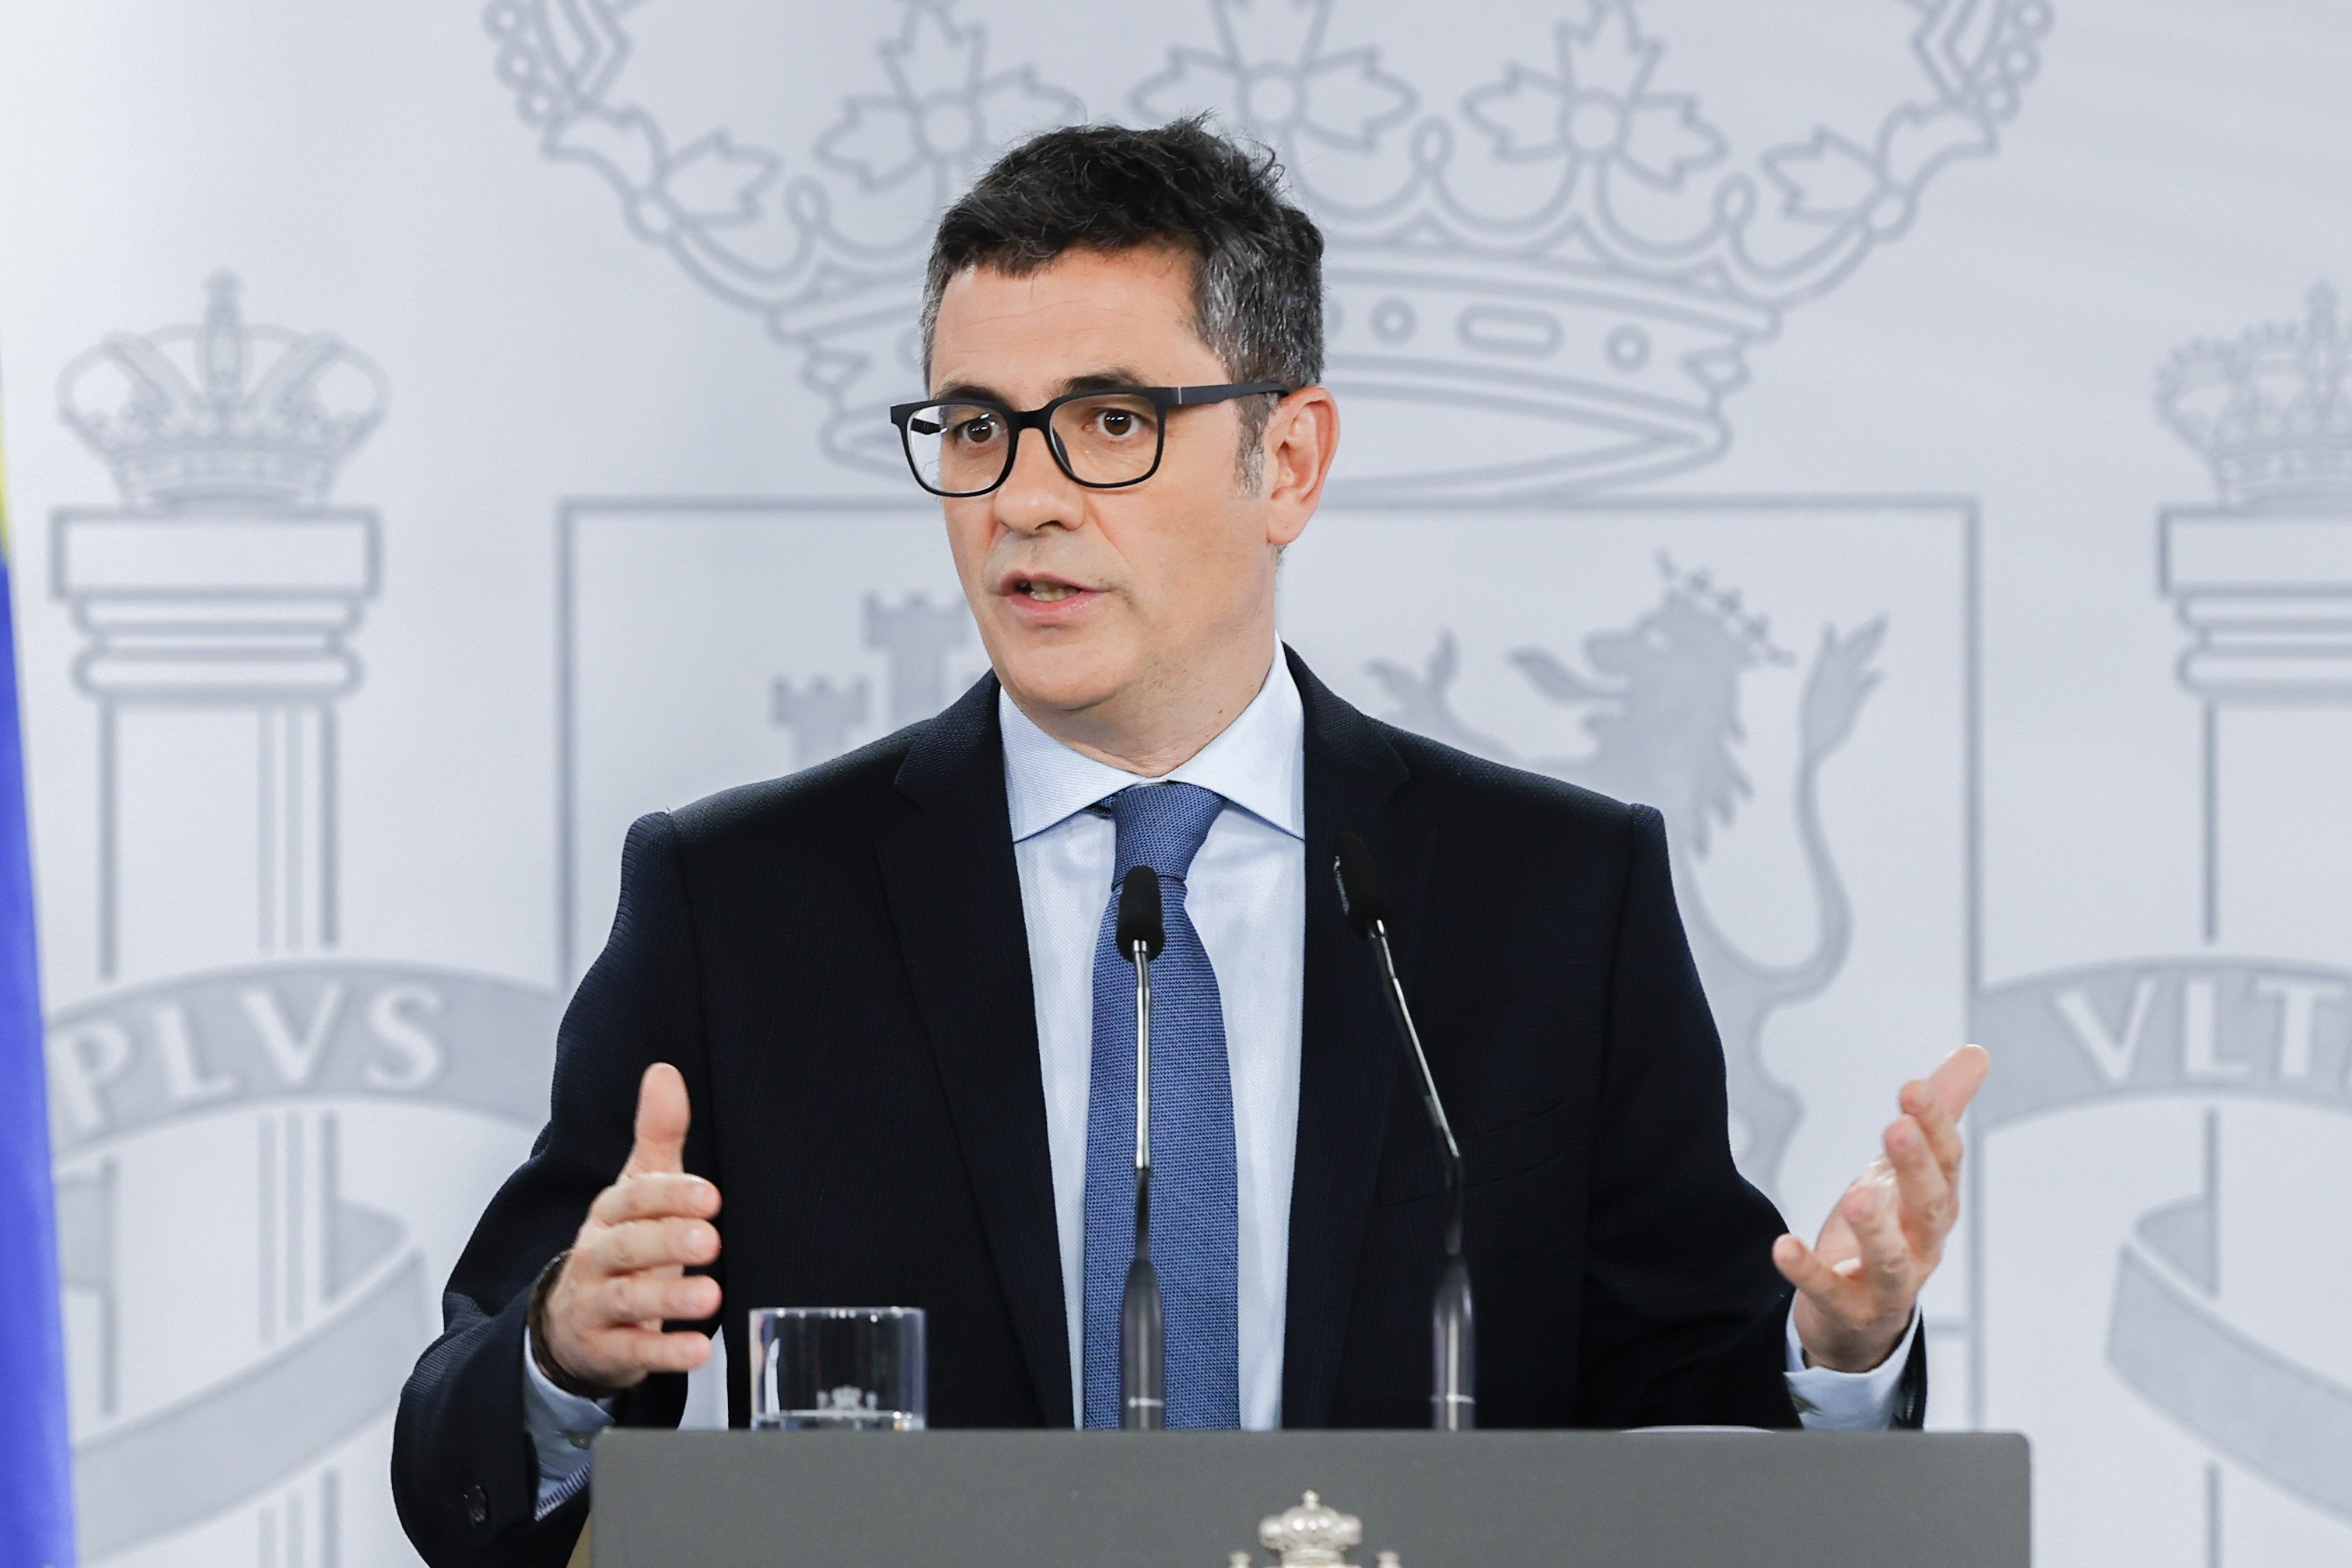 El PSOE planeja presentar el ministre Félix Bolaños per disputar-li l'alcaldia de Madrid a Almeida